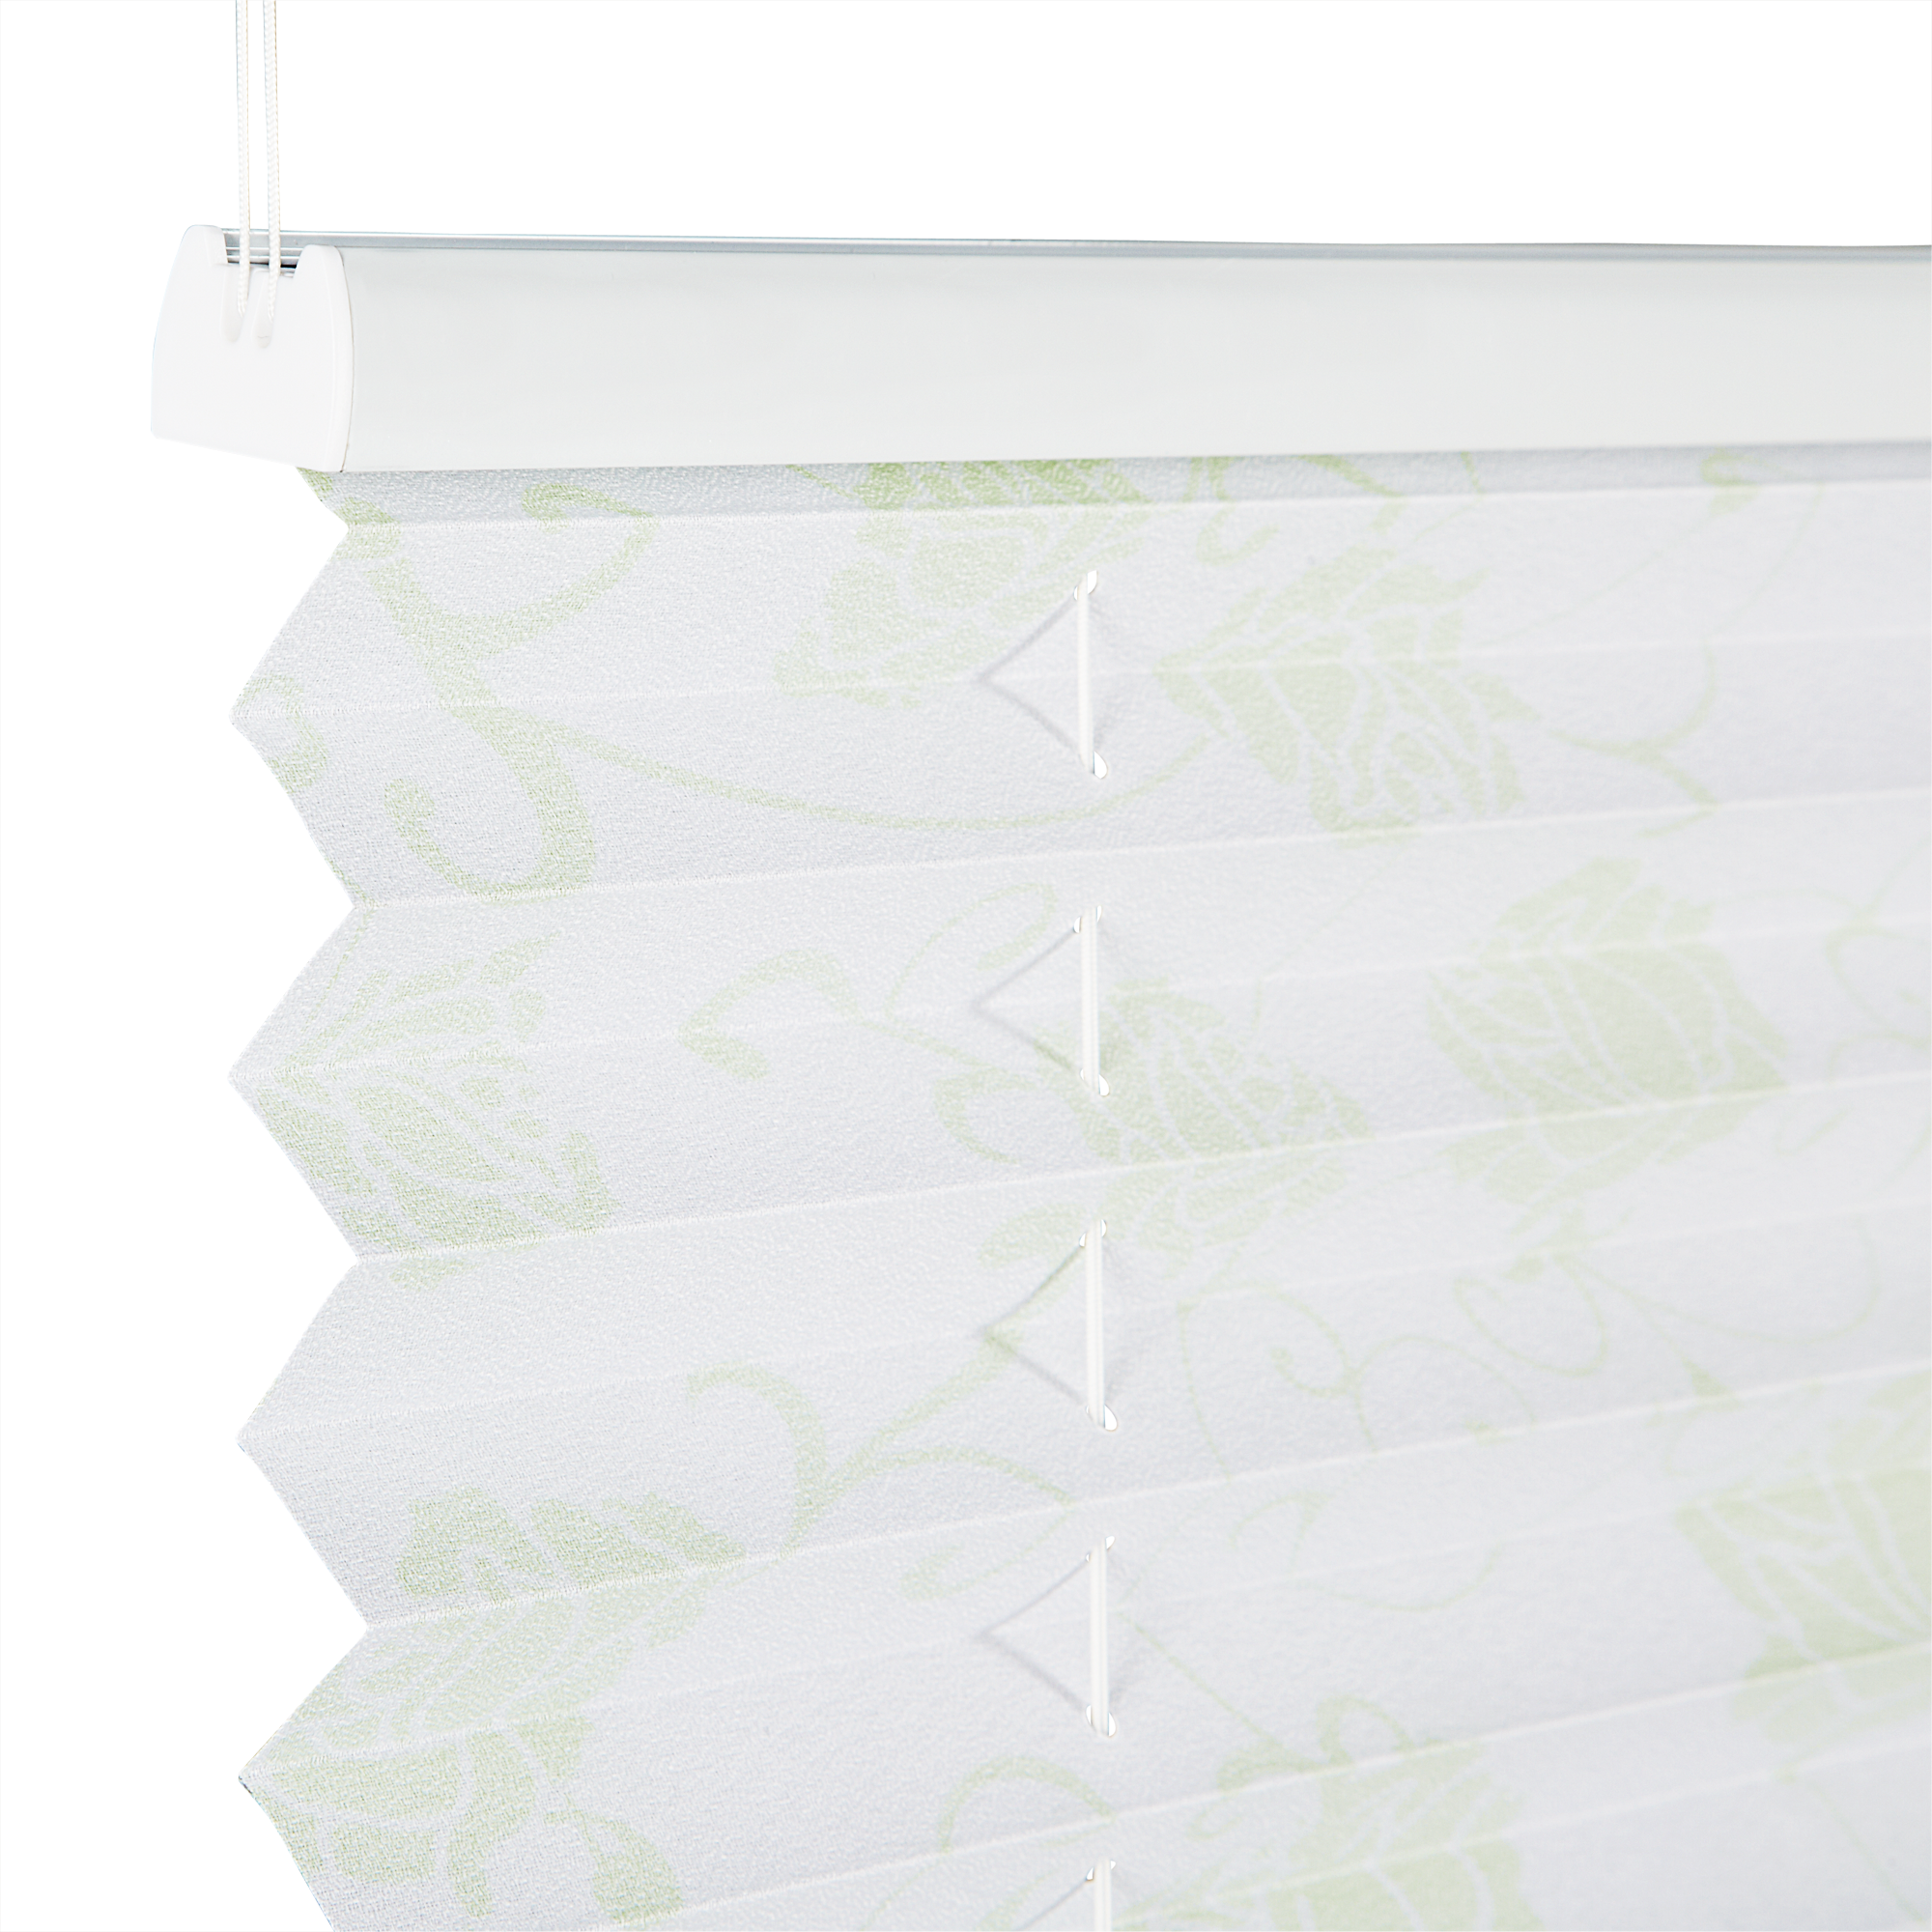 Tageslichtplissee 'Blüten' weiß/grün 50 x 130 cm + product picture